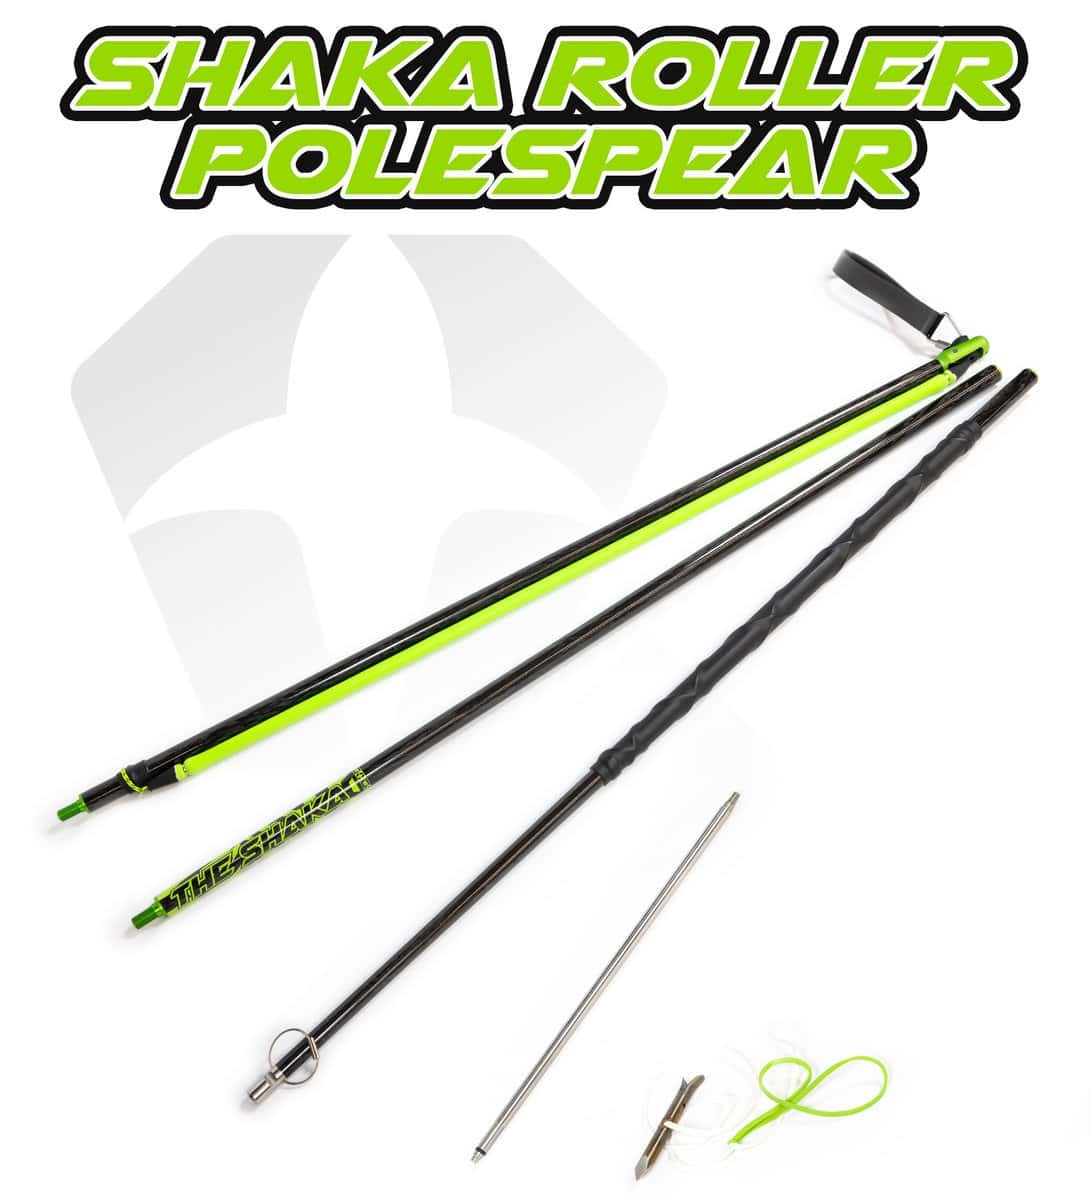 JBL Spearguns' new Shaka Roller Polespear